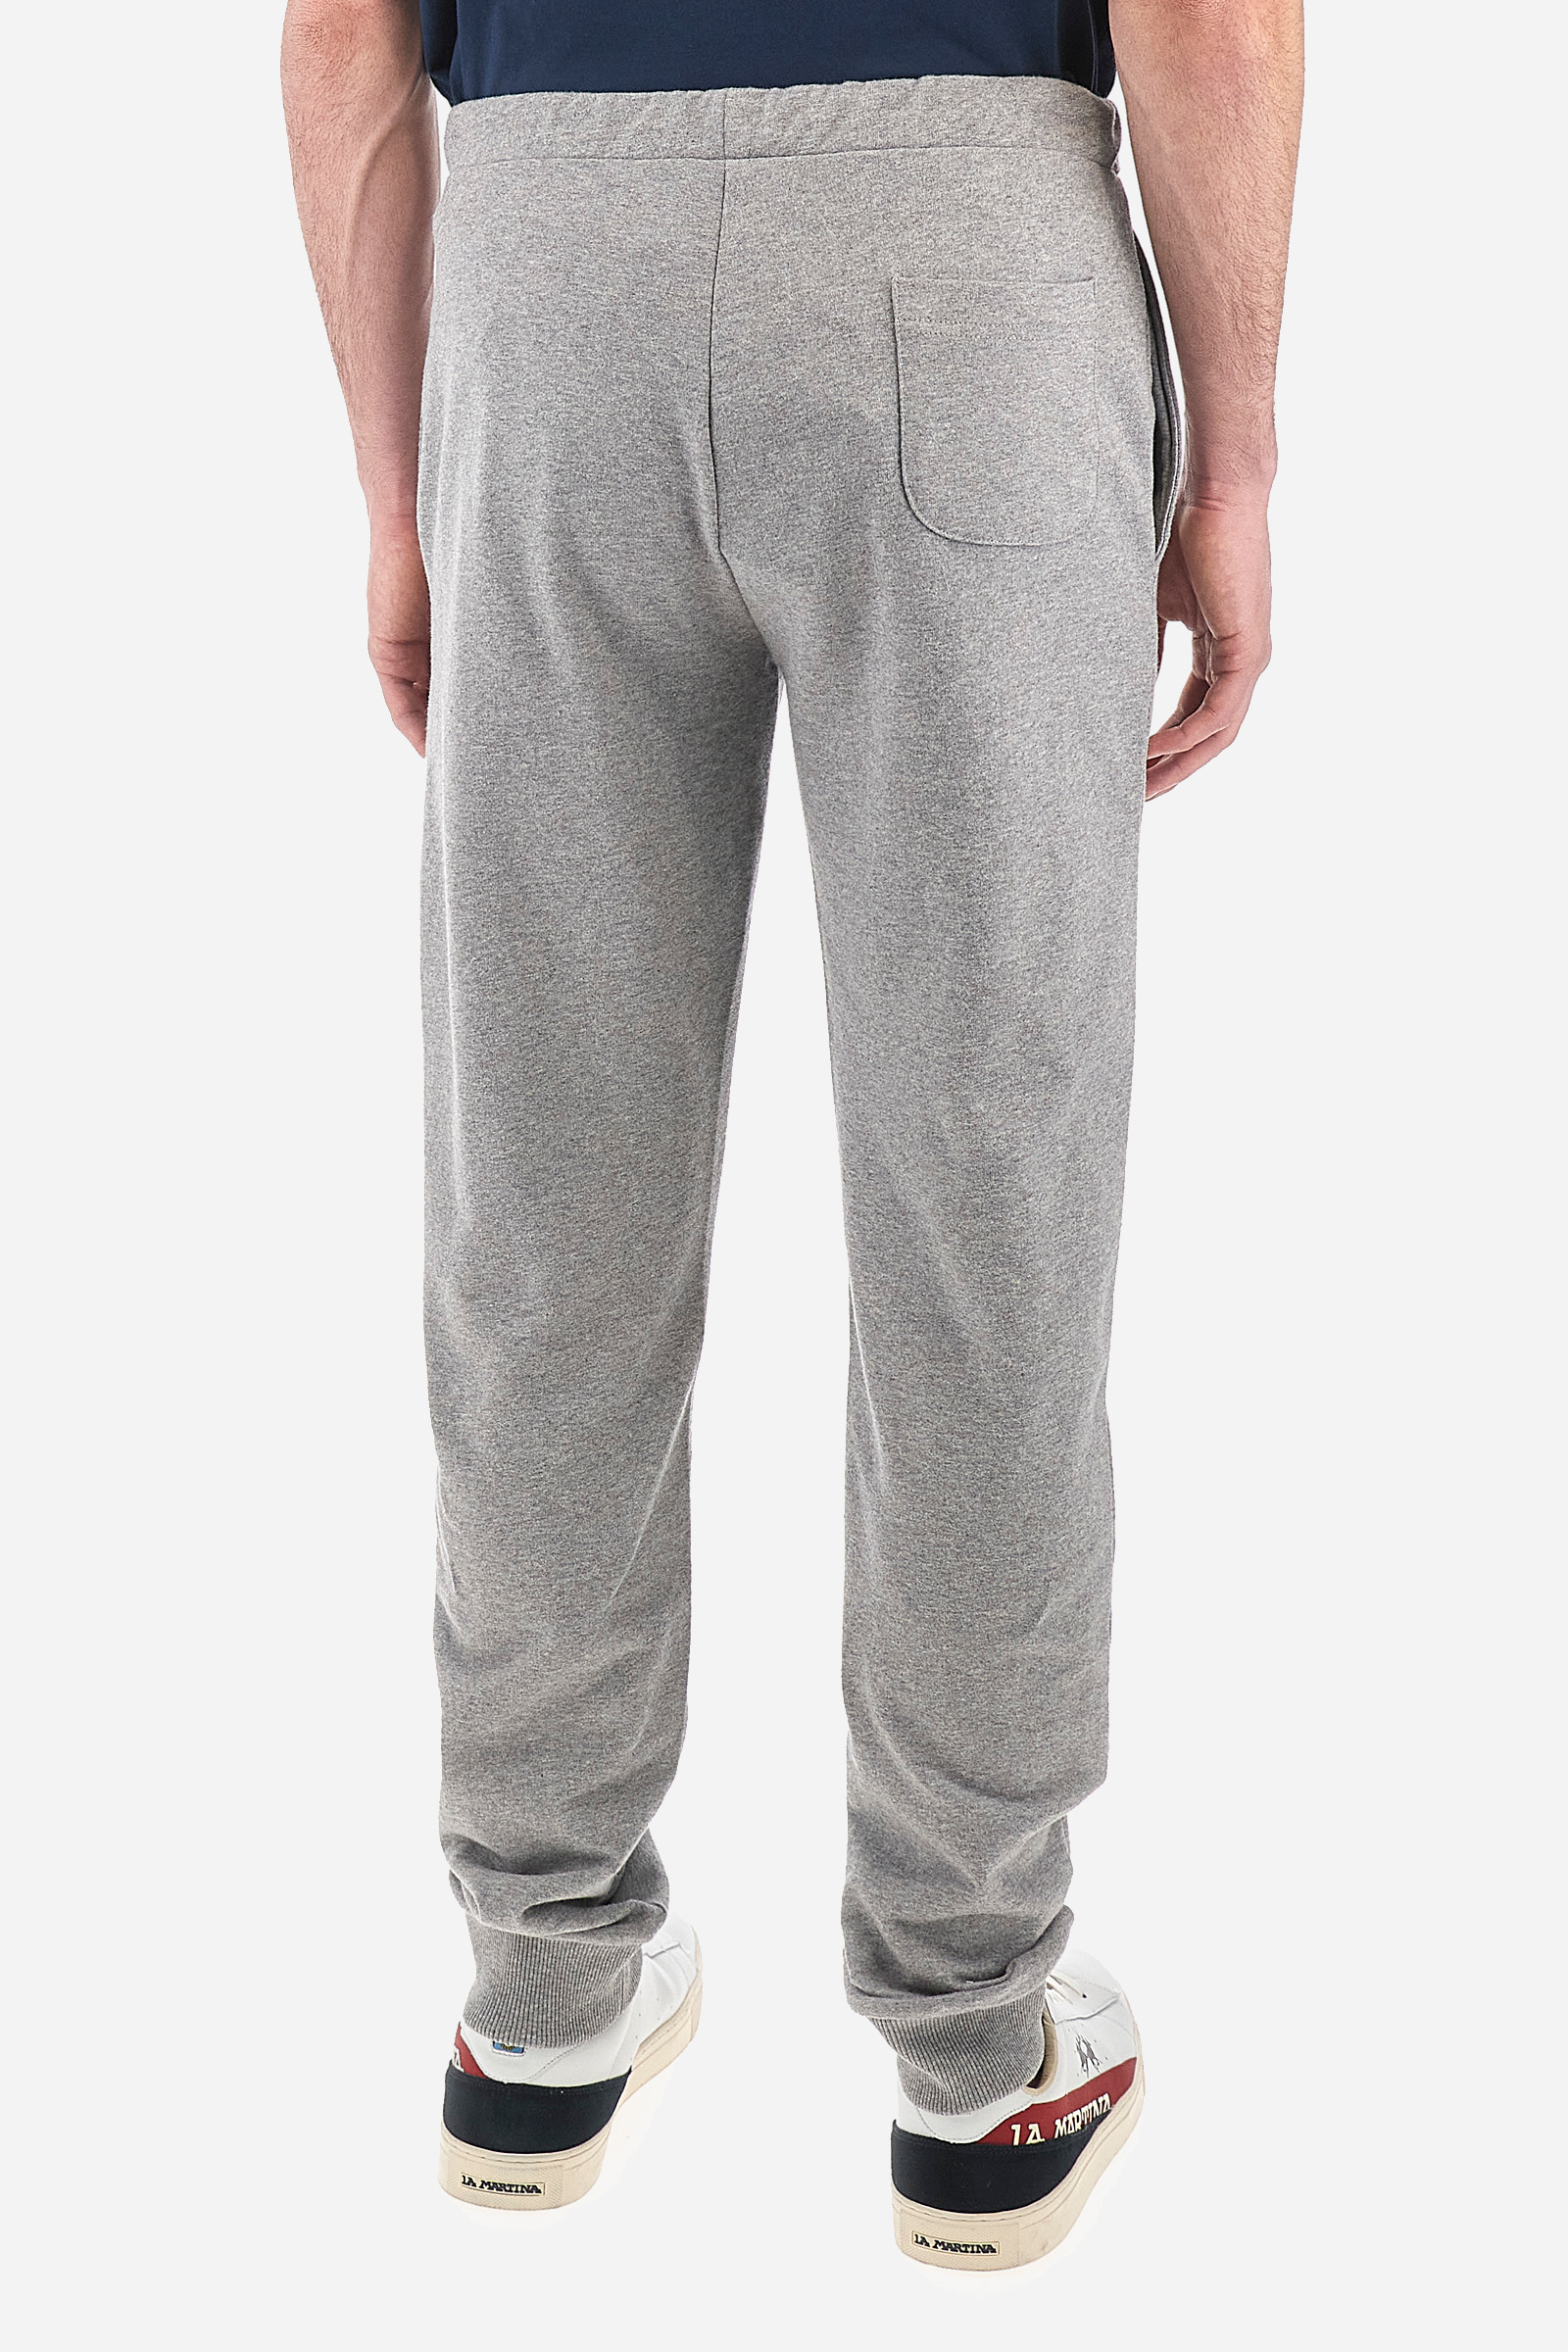 Pantalon de jogging large gris pour homme - Pantalon d'hiver ample - Coupe  décontractée - Pantalon de jogging - Pantalon de survêtement Aestethic -  Jambe large - Pantalon de loisirs - Pantalon cargo - : : Mode